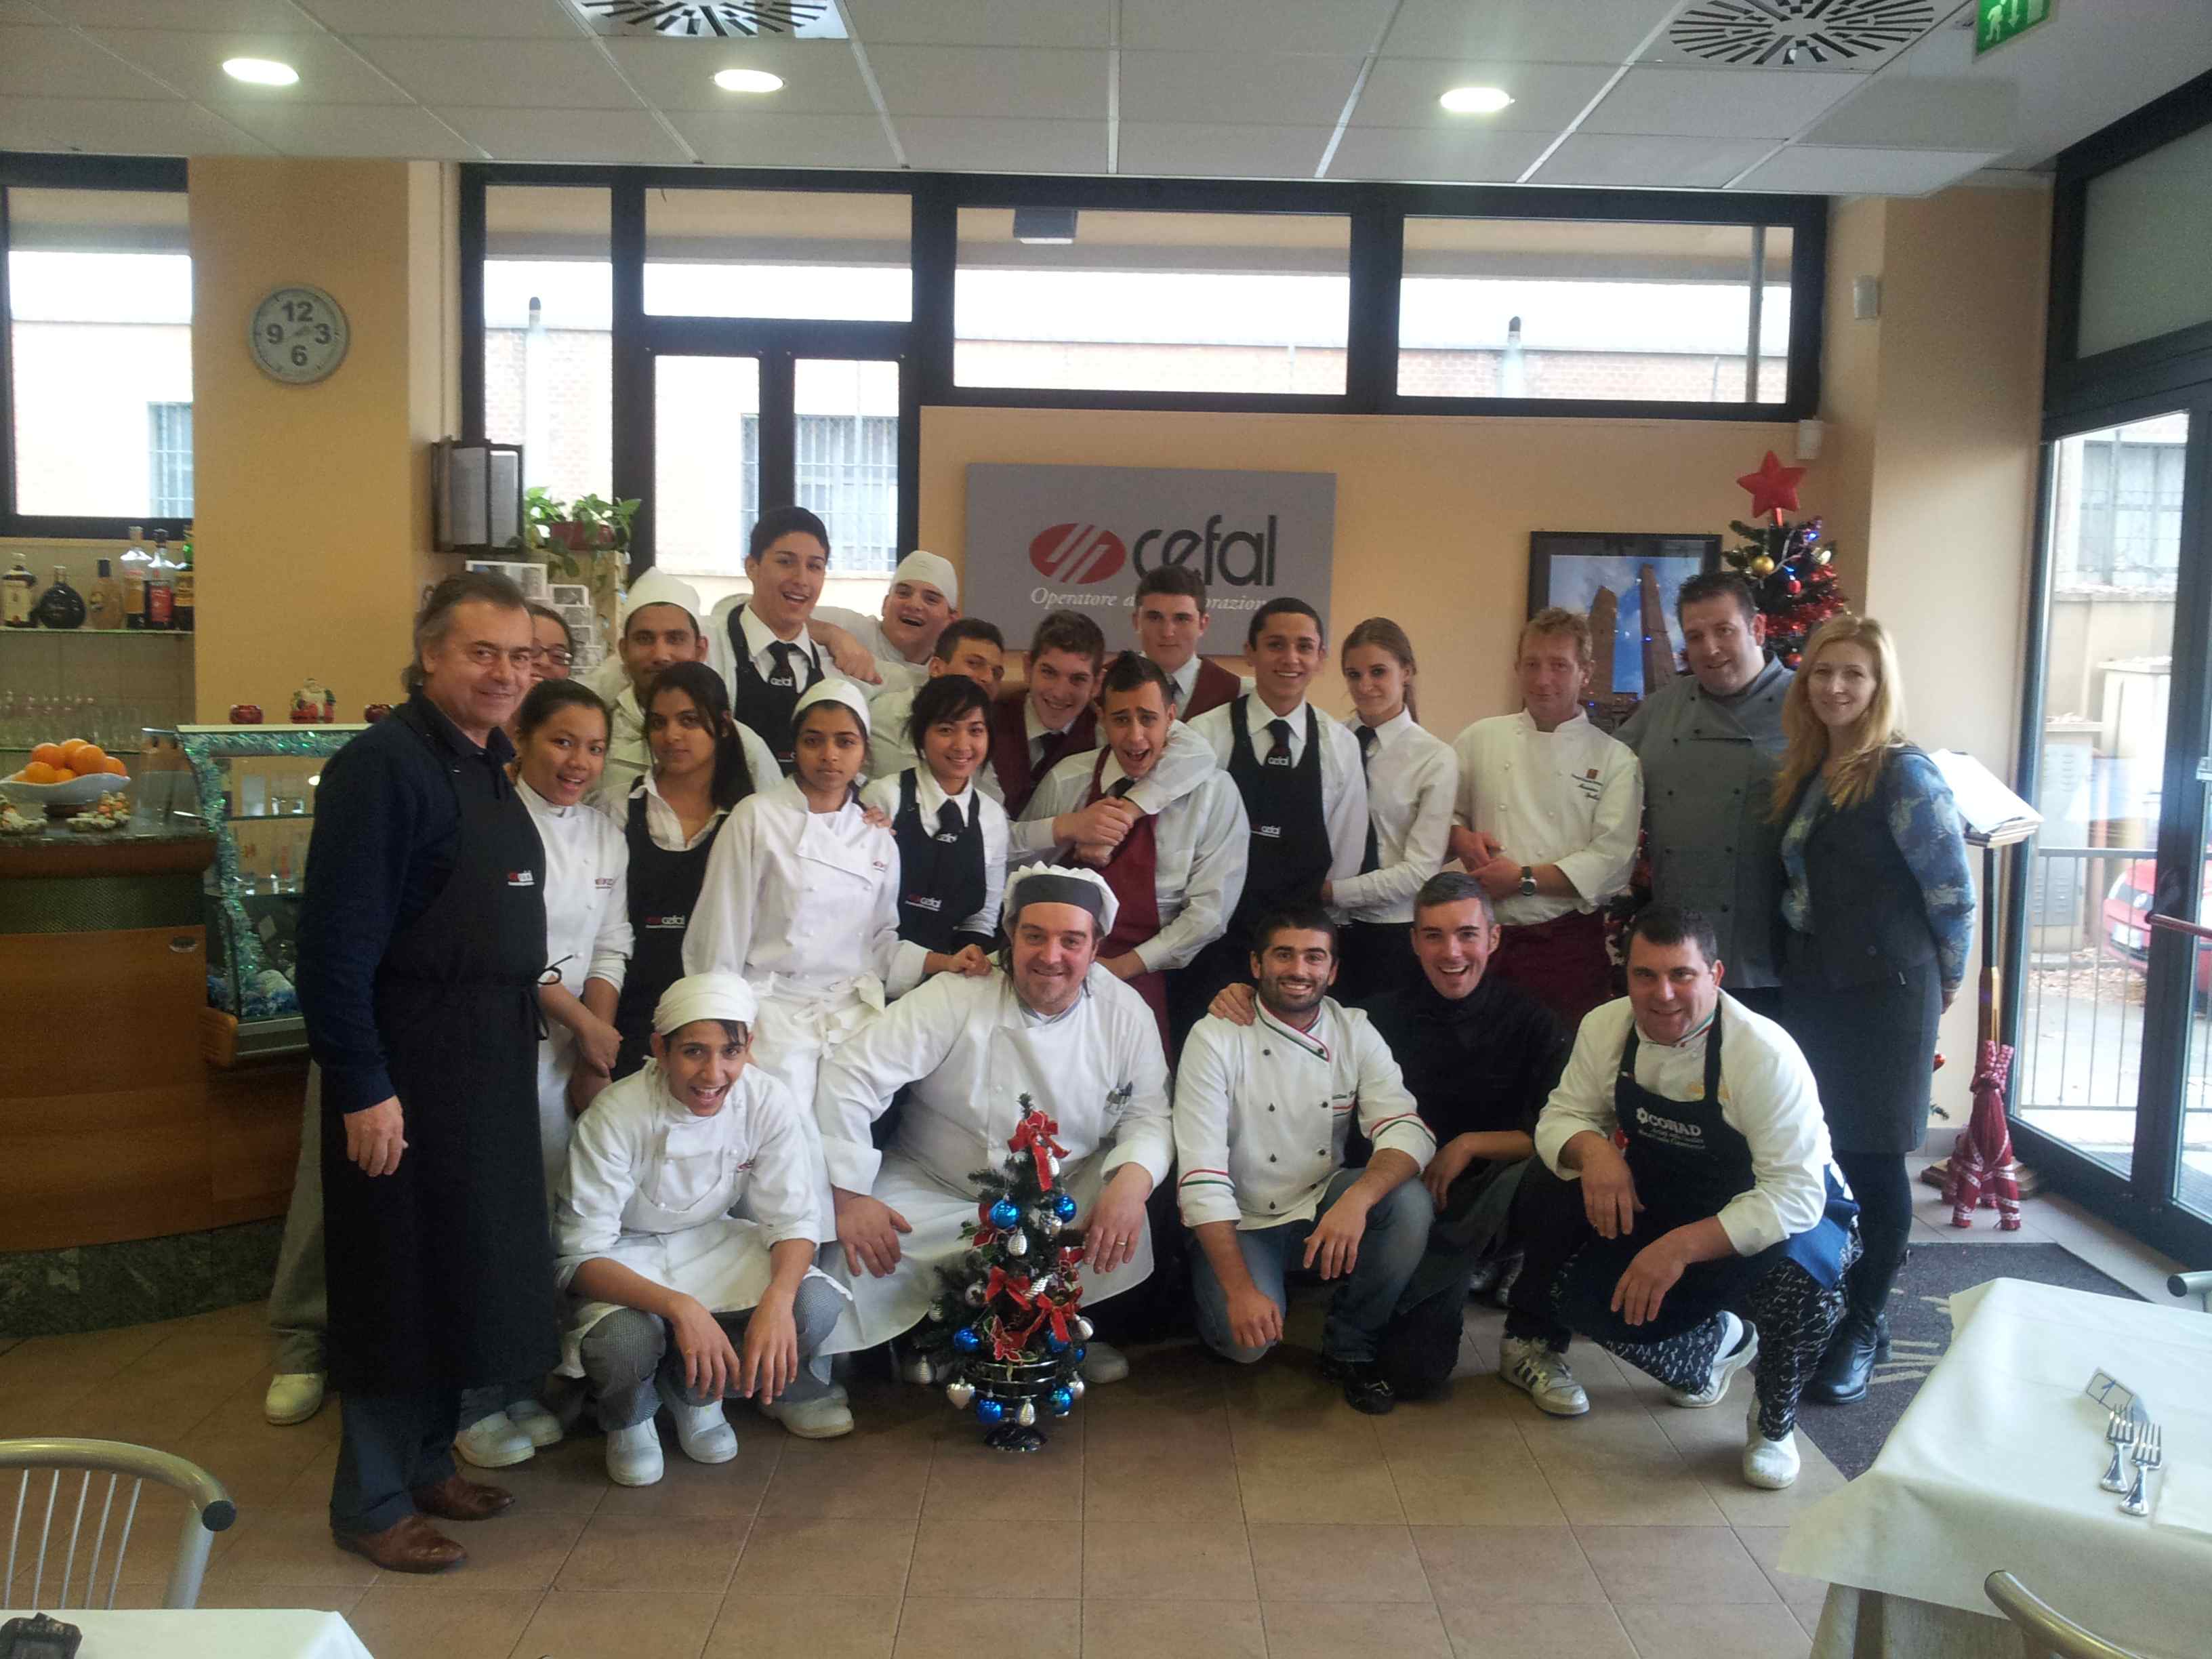 Le Torri, șase bucătari Michelin-a jucat in bucatarie - CEFAL